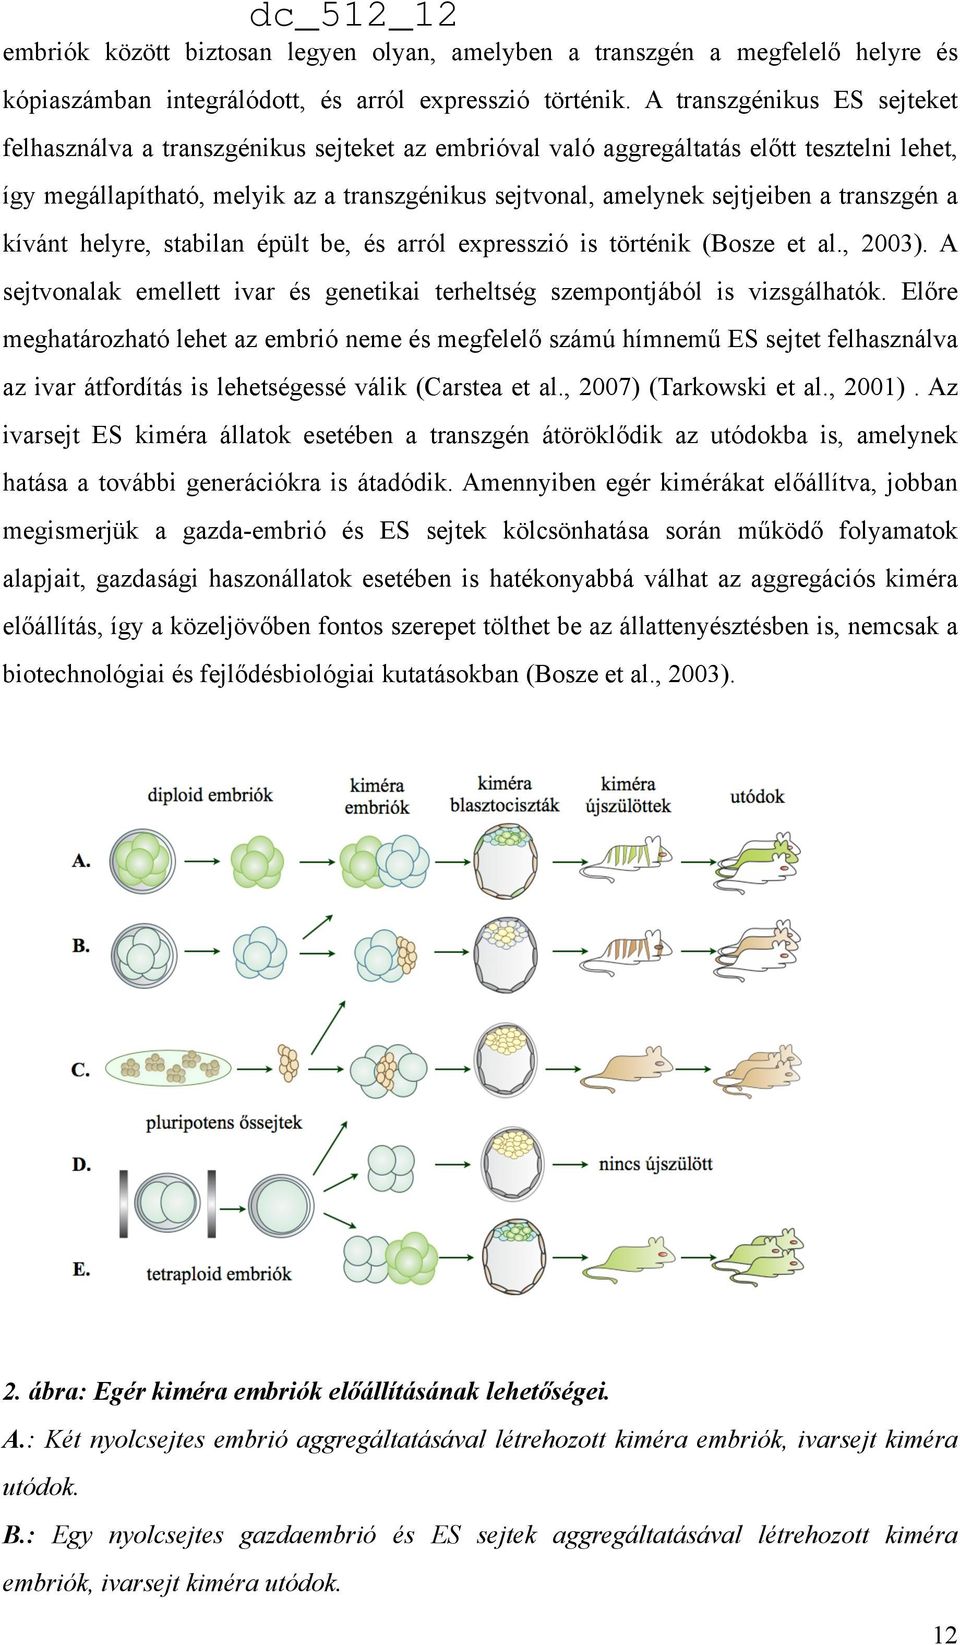 transzgén a kívánt helyre, stabilan épült be, és arról expresszió is történik (Bosze et al., 2003). A sejtvonalak emellett ivar és genetikai terheltség szempontjából is vizsgálhatók.